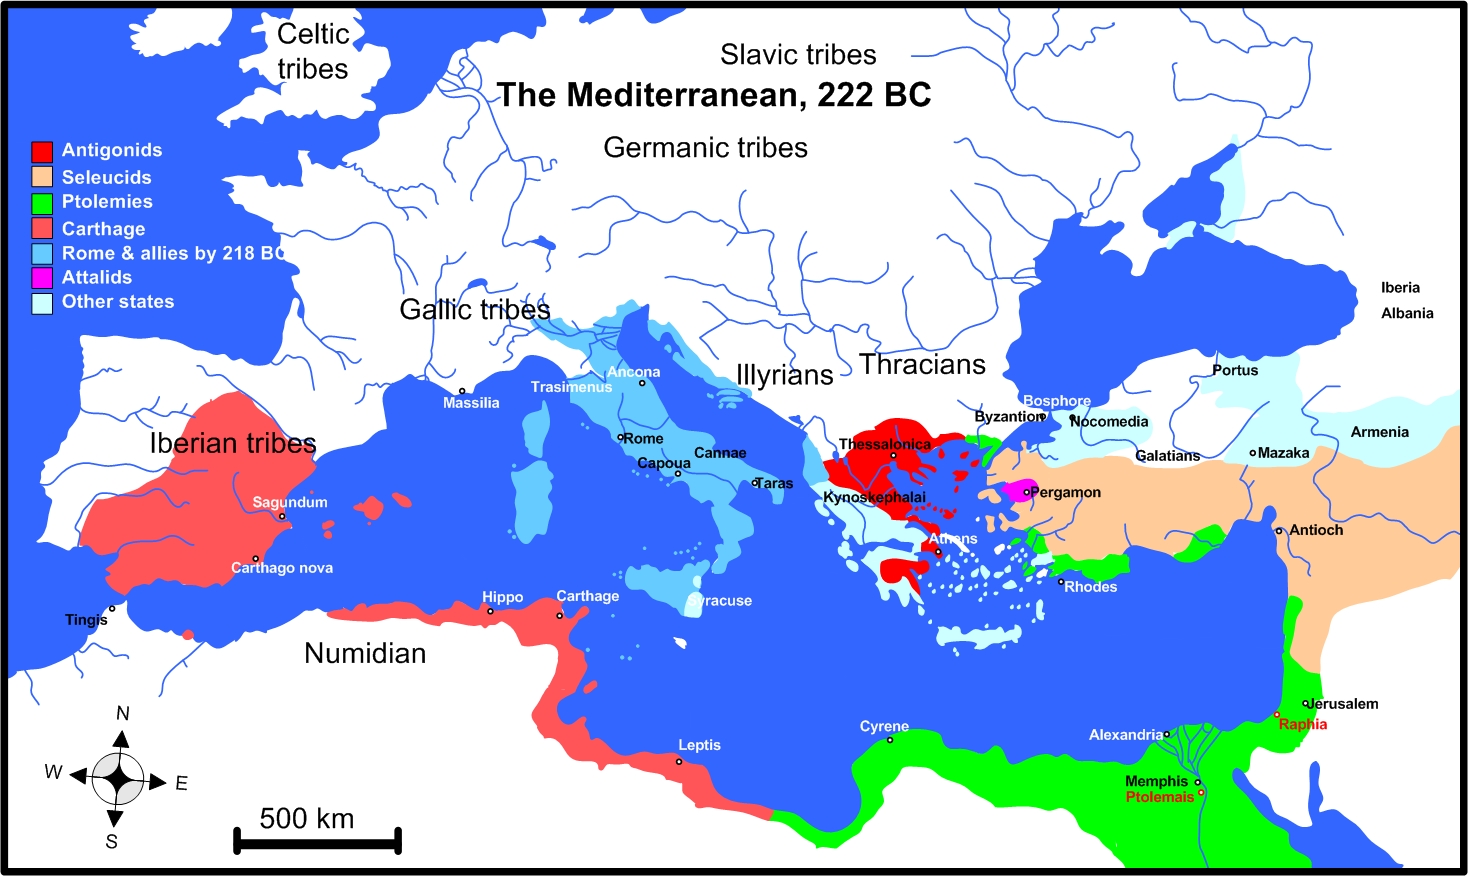 Mediterranean in the year 222 BC